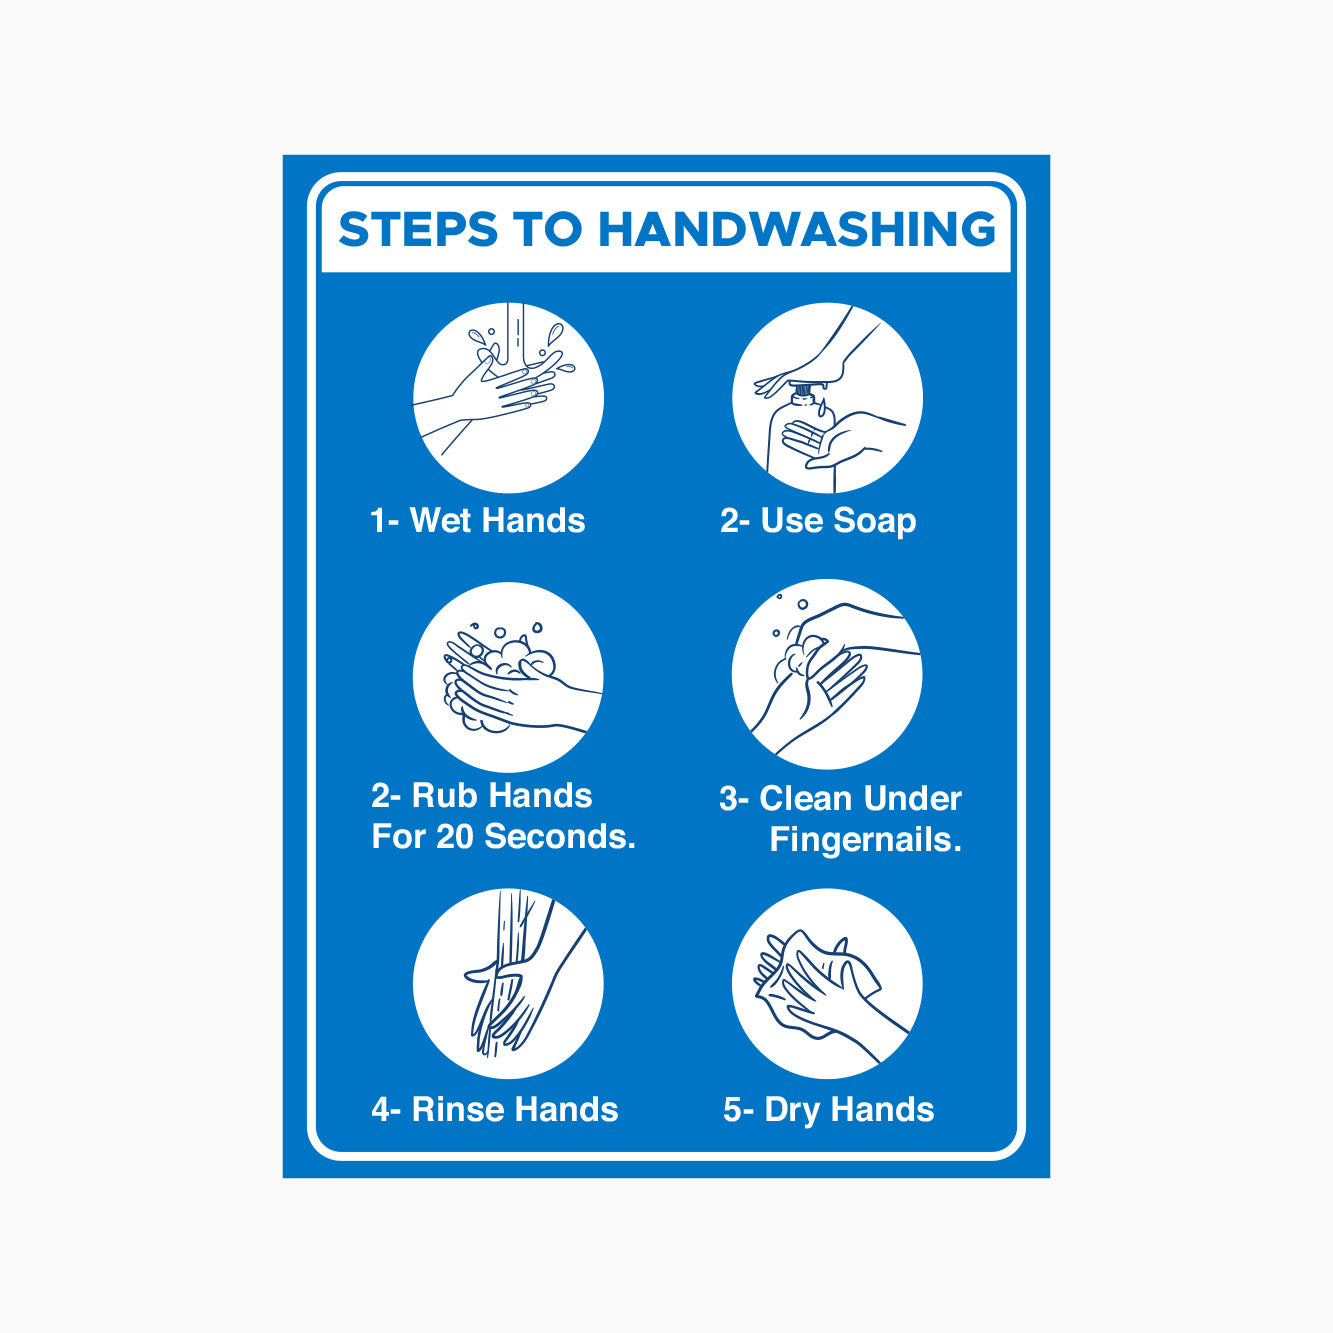 STEPS TO HANDWASHING SIGN